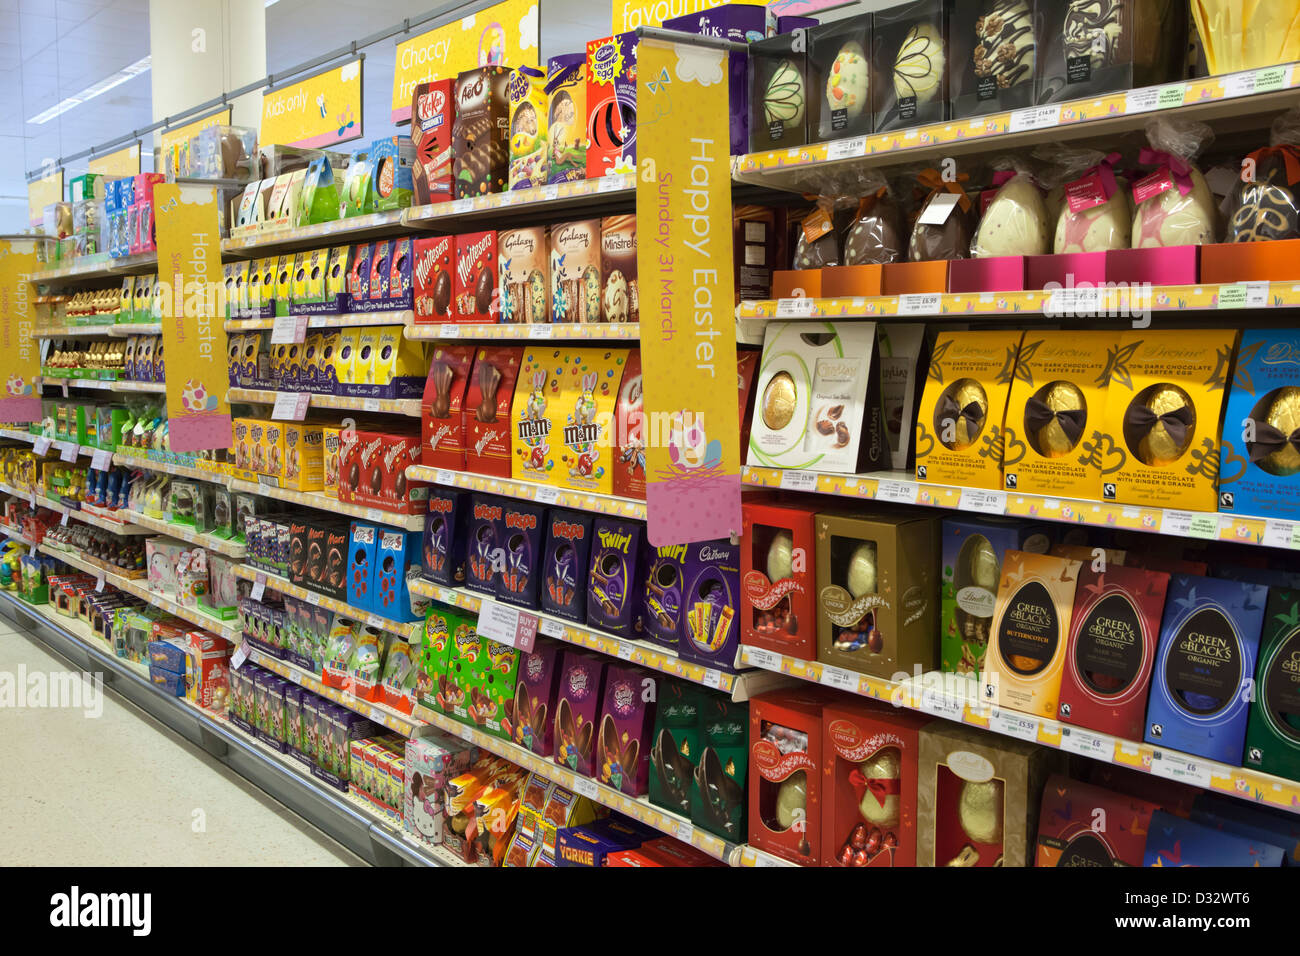 Los huevos de pascua en las estanterías del supermercado Waitrose Foto de stock